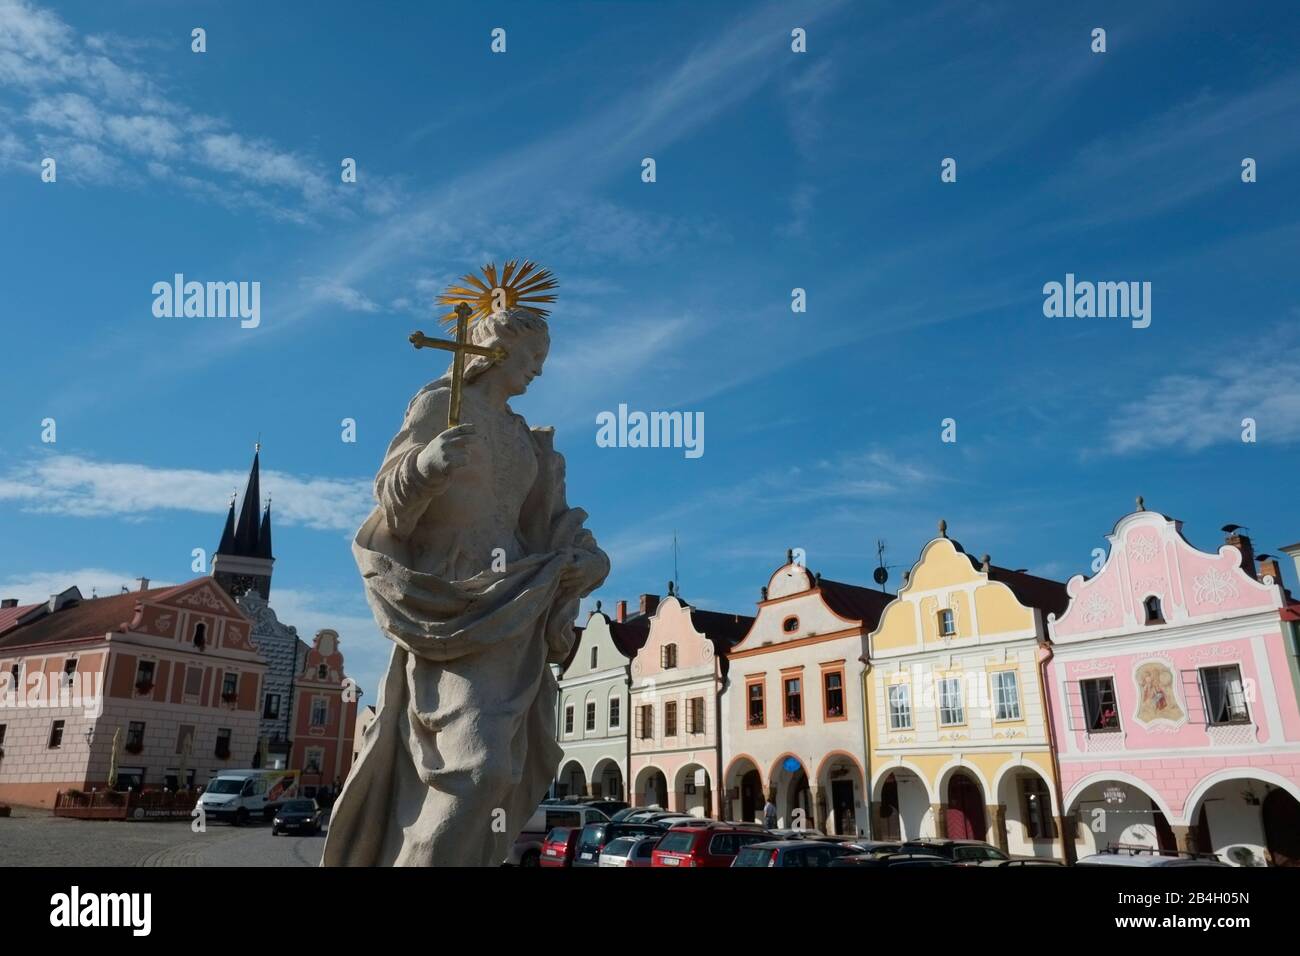 Telc, République Tchèque - Site Du Patrimoine Mondial De L'Unesco. Statue baroque de Saint Margaret avec maisons de ville baroques au-dessus de l'arche de la Renaissance Banque D'Images